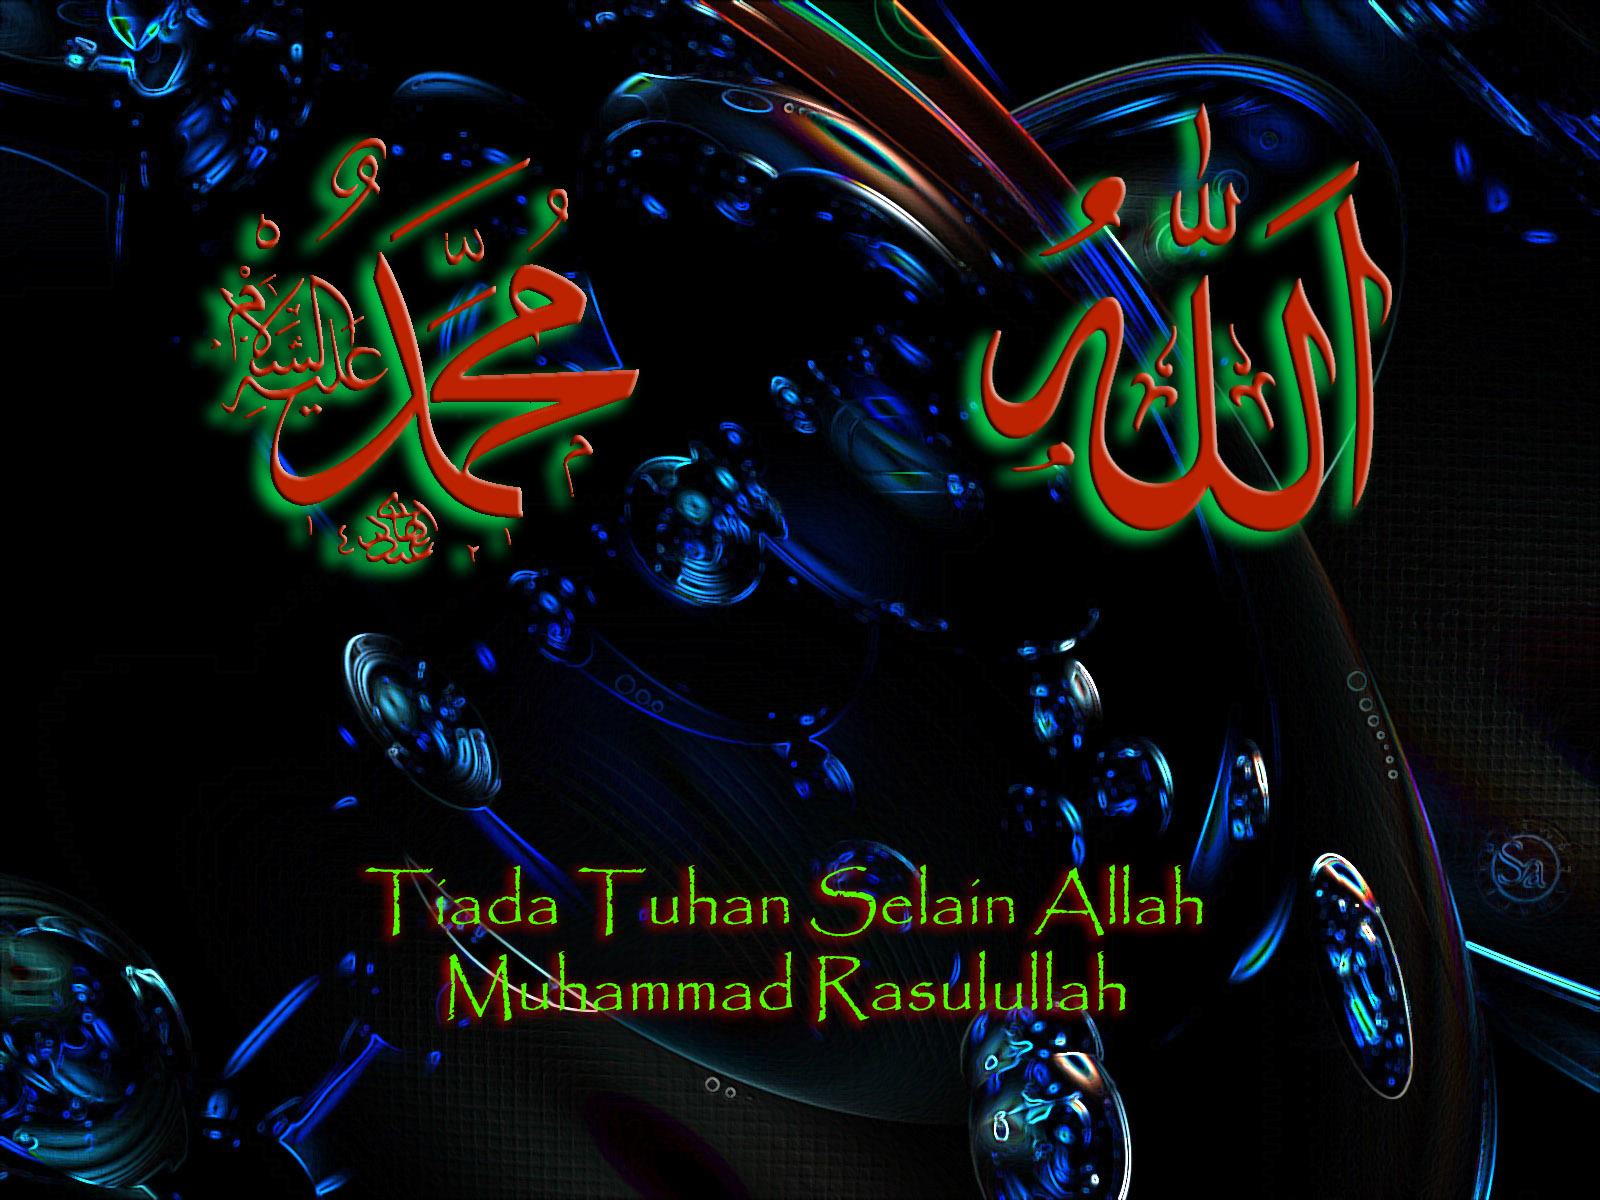 http://2.bp.blogspot.com/-pr_v4B_4BK8/TdUHuoDingI/AAAAAAAAATg/Of0bhYYqKo4/s1600/Tiada+Tuhan+Selain+Allah+Muhammad+Rasulullah.jpg